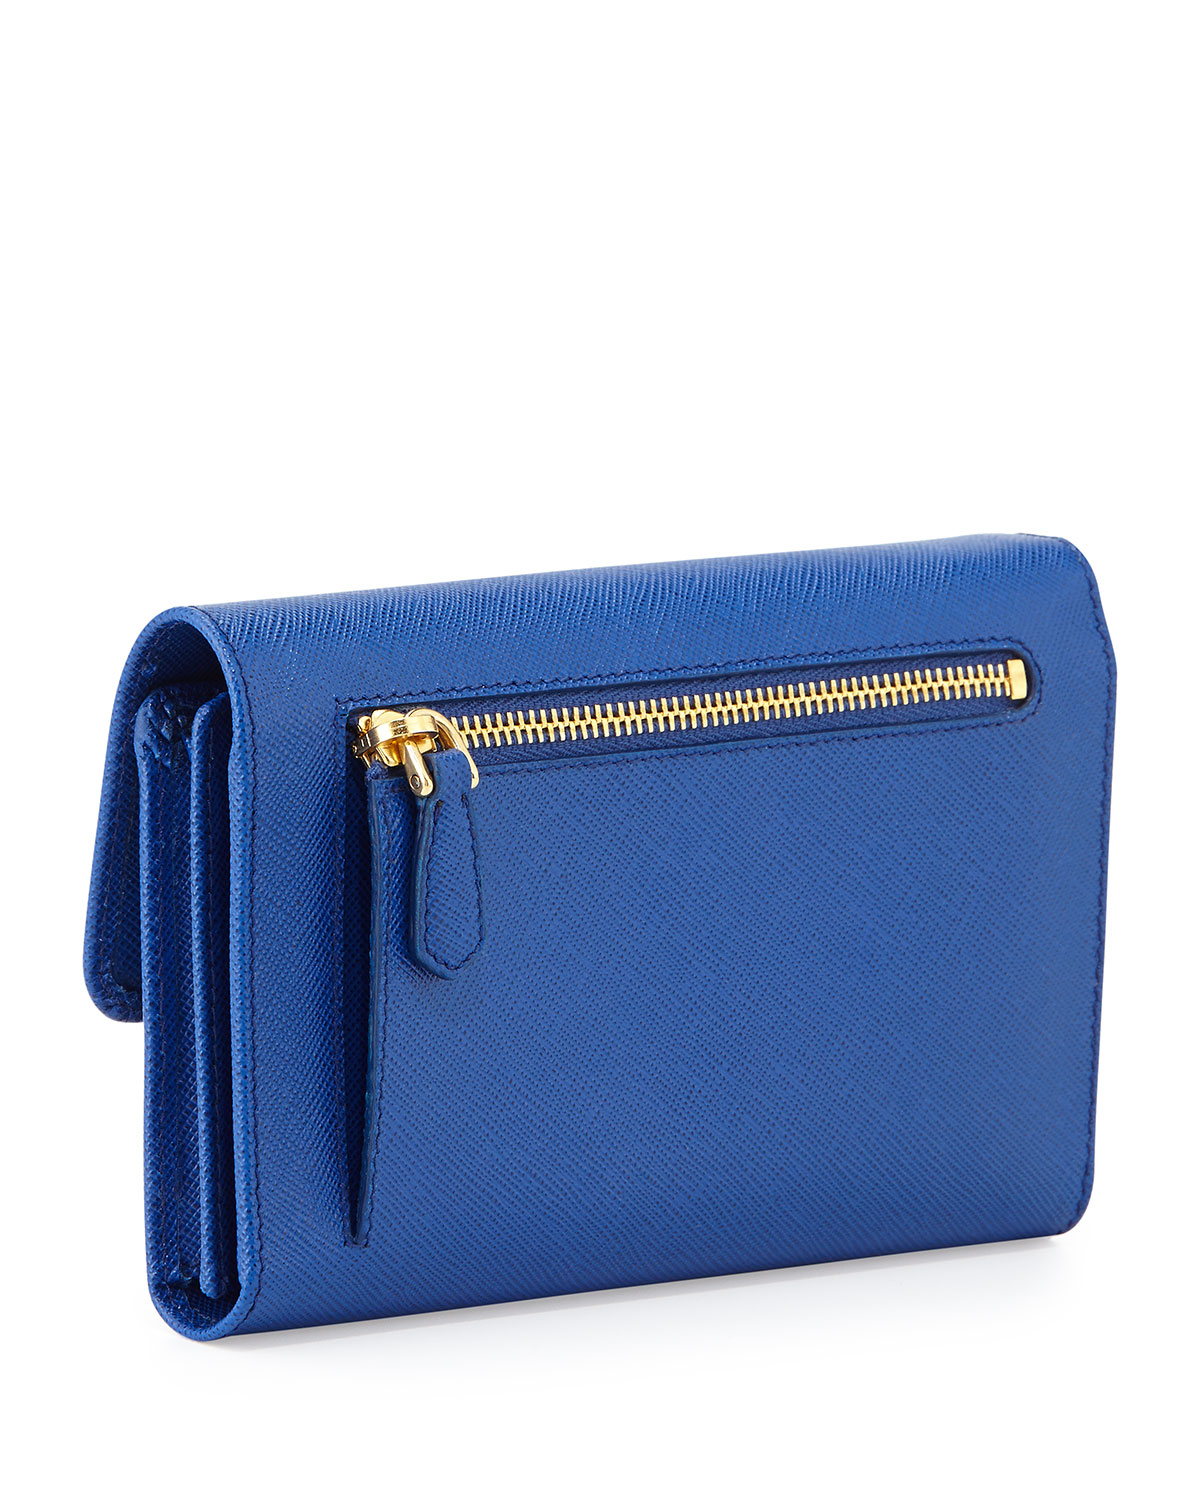 Prada Saffiano Wristlet Clutch Bag in Blue (ROYAL BLUE) | Lyst  